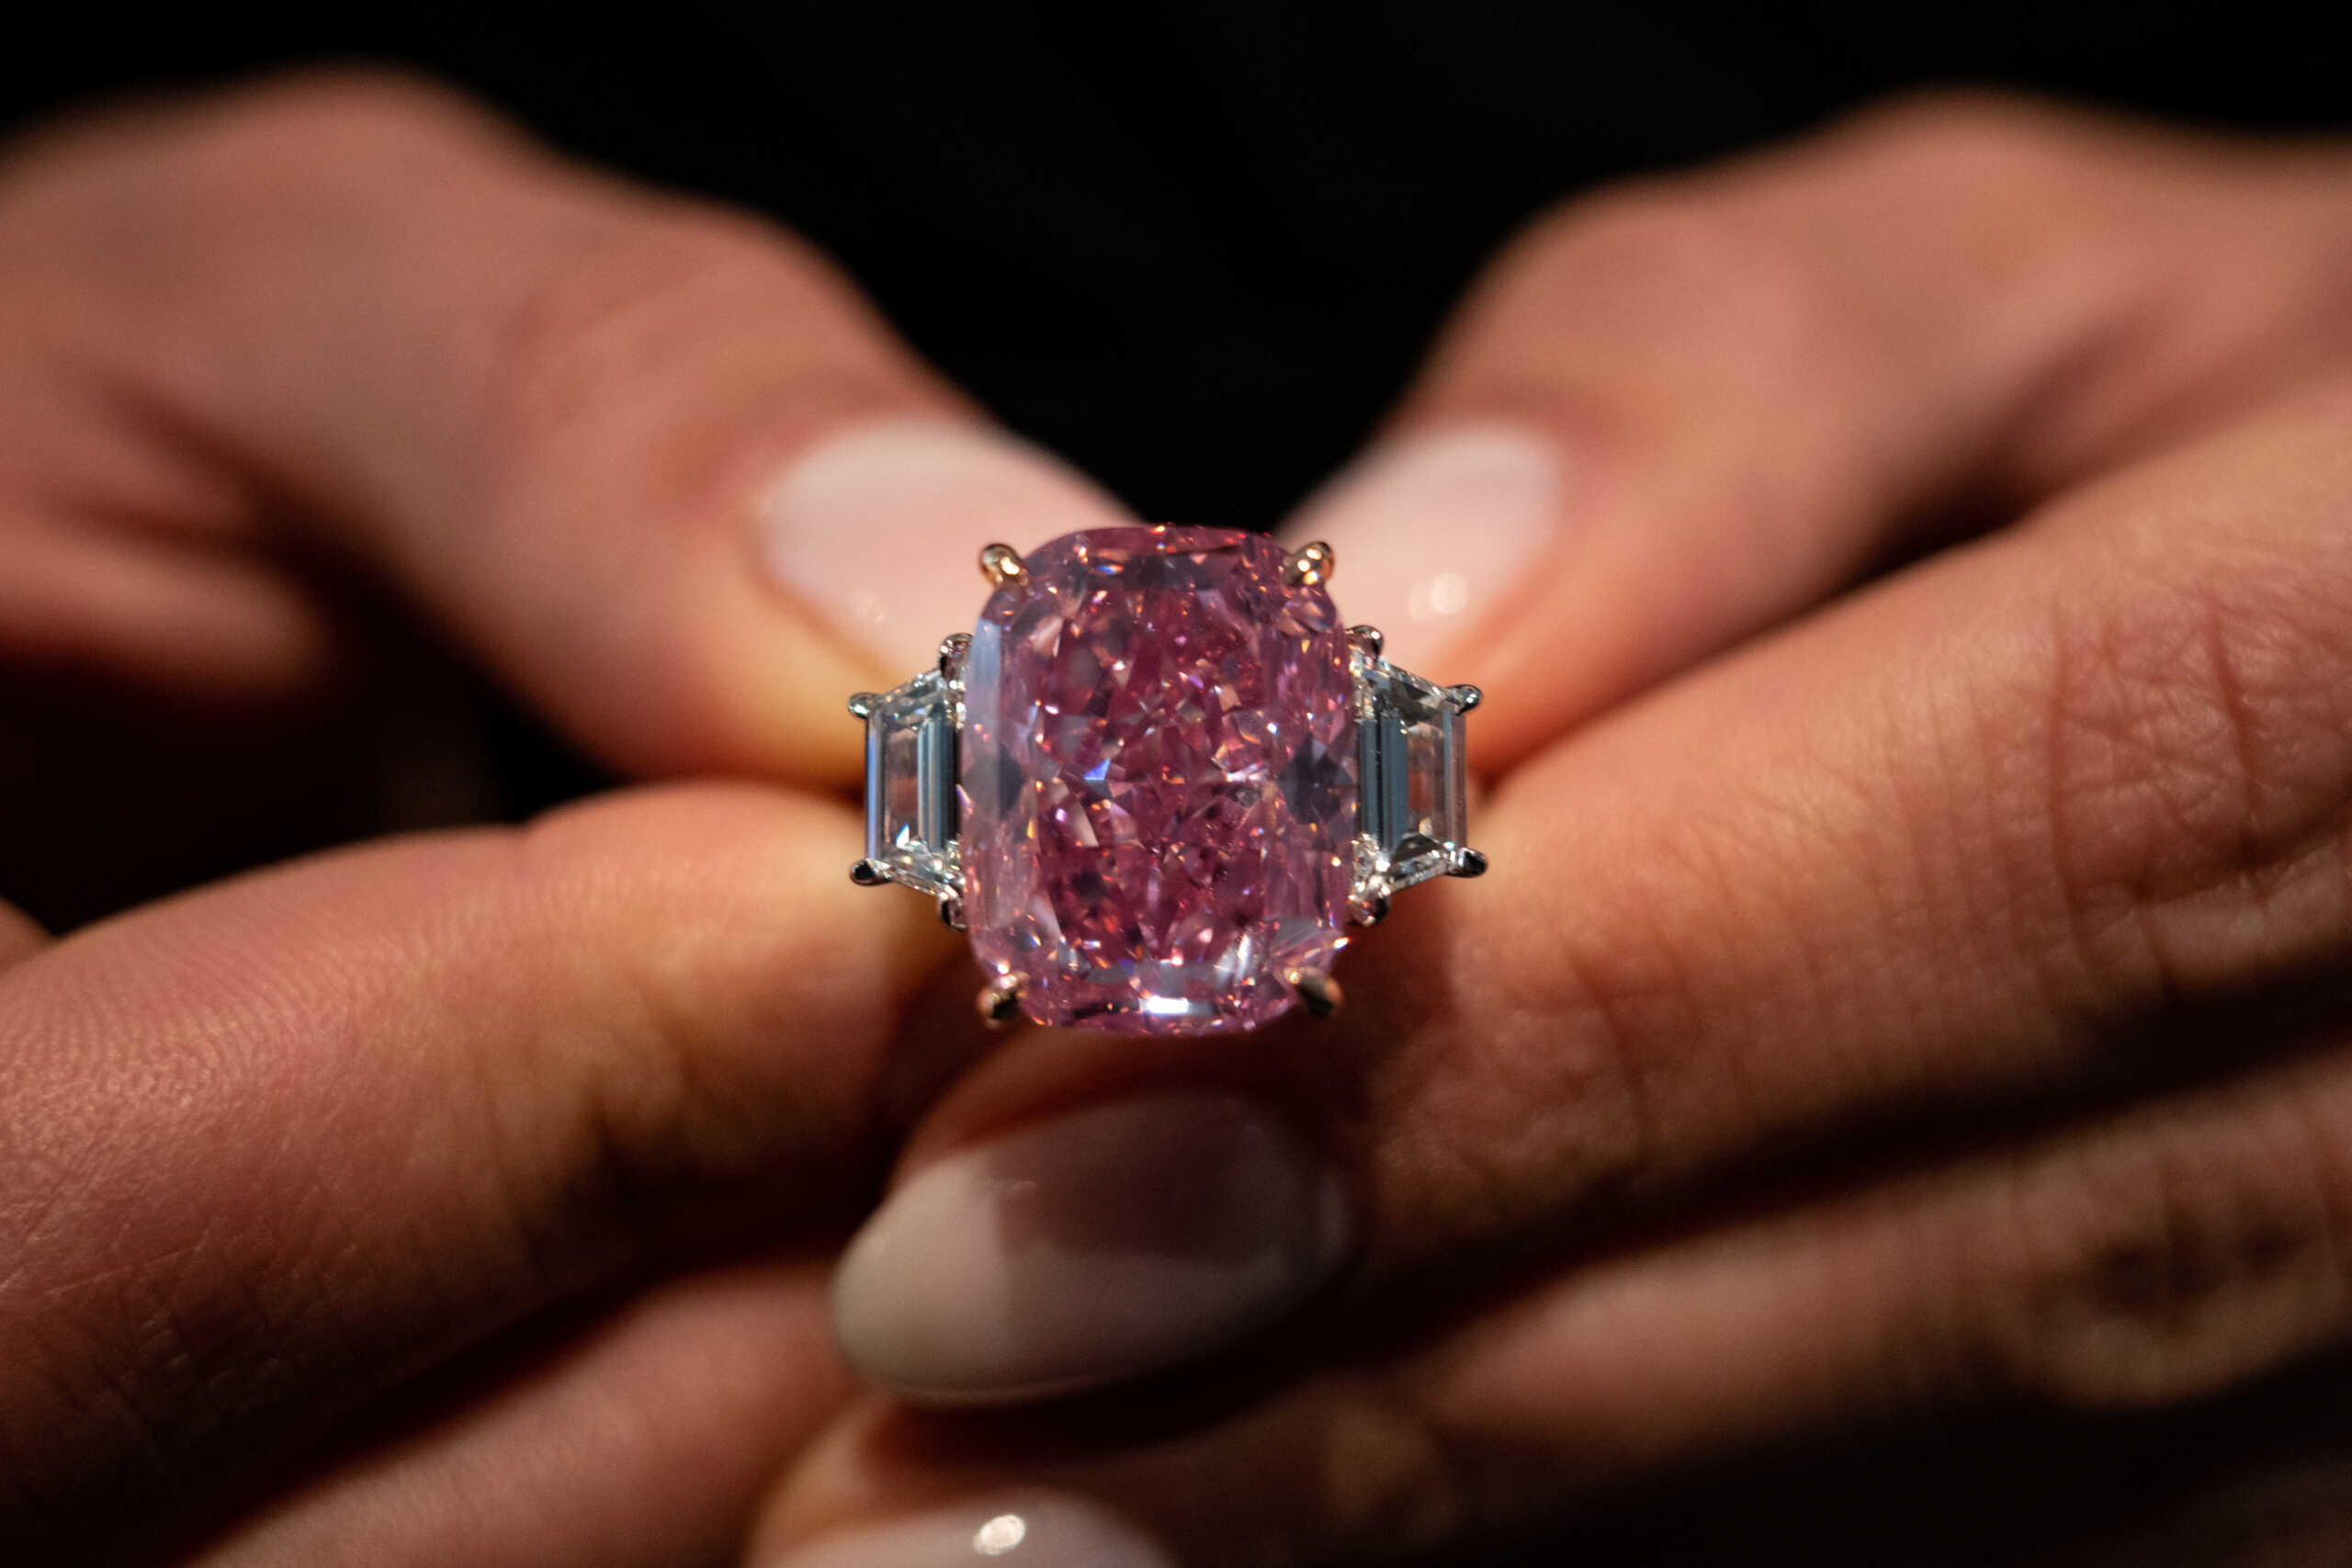 ΗΠΑ: Σπάνιο ροζ διαμάντι θα δημοπρατηθεί στη Νέα Υόρκη – 35 εκατ. δολάρια η αξία του